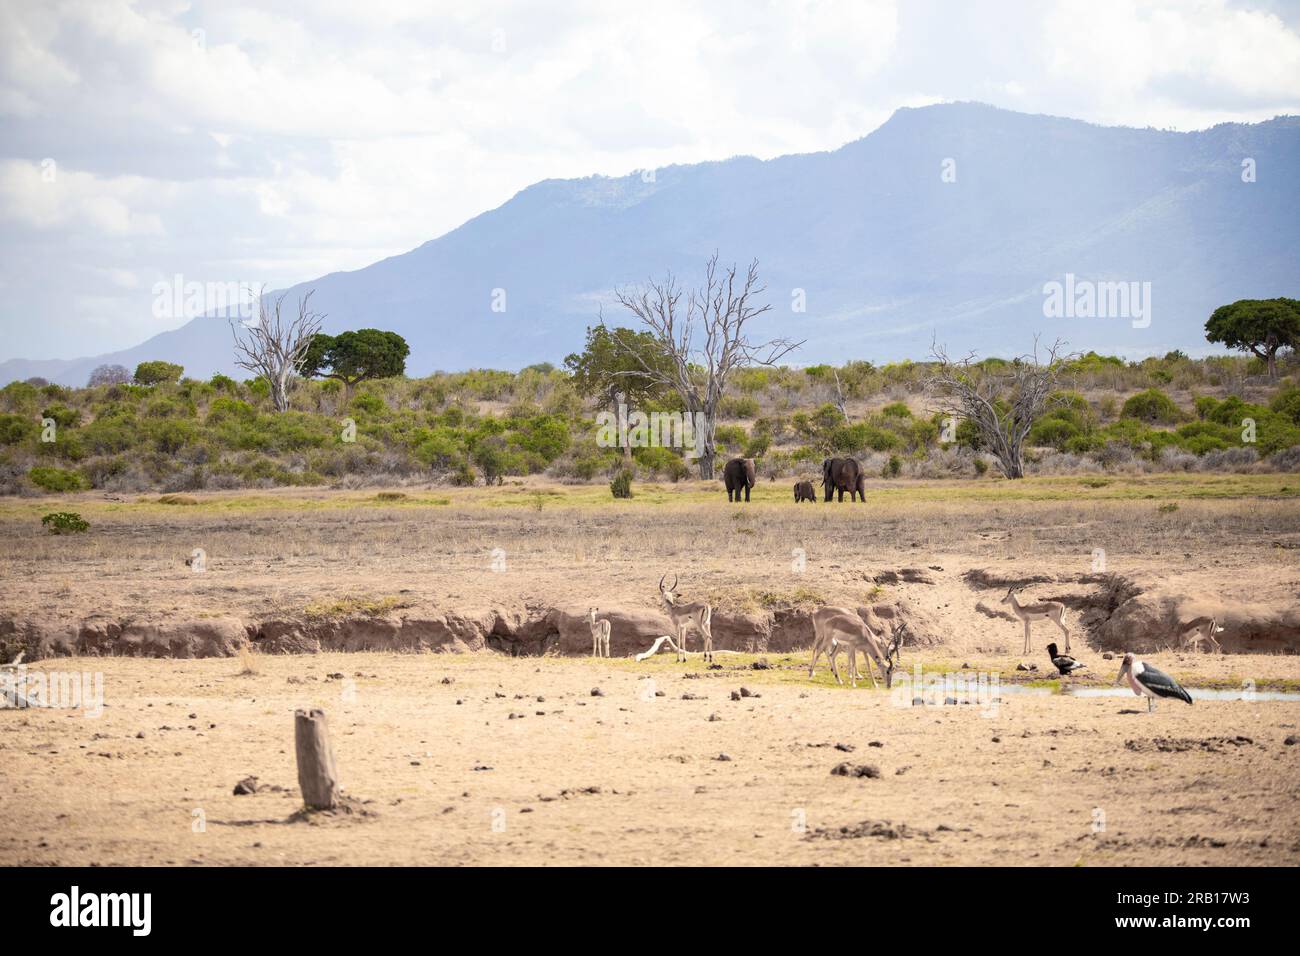 Troupeau d'éléphants dans un paysage de savane, safari au Kenya, Afrique Banque D'Images